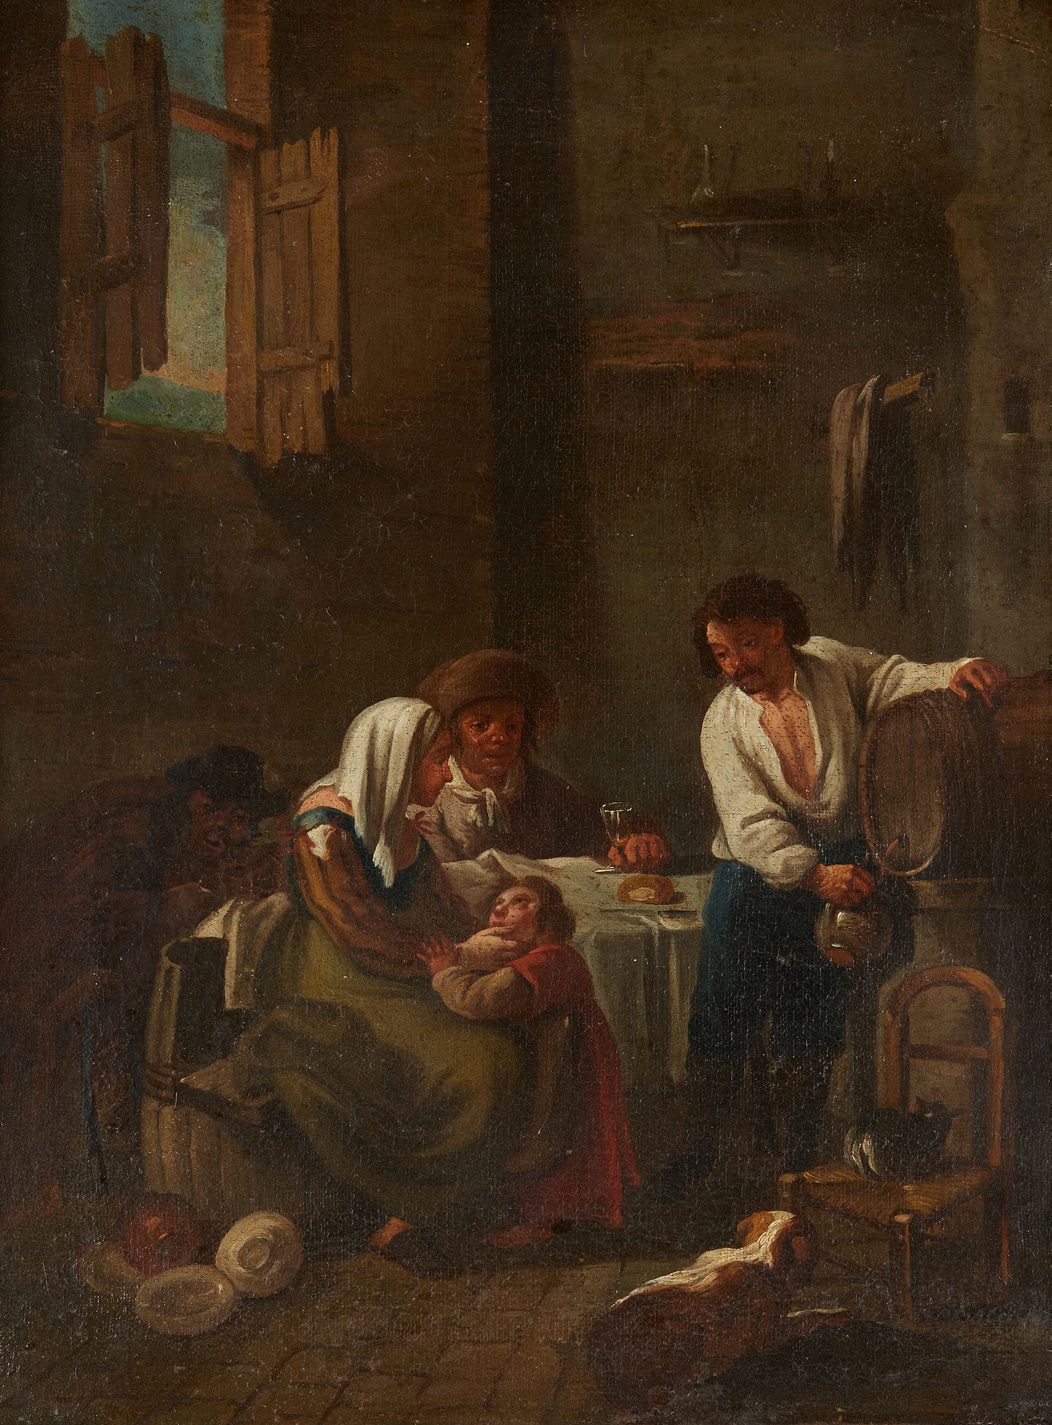 École HOLLANDAISE du XIXe siècle Tavern scene
Canvas 62 x 47 cm